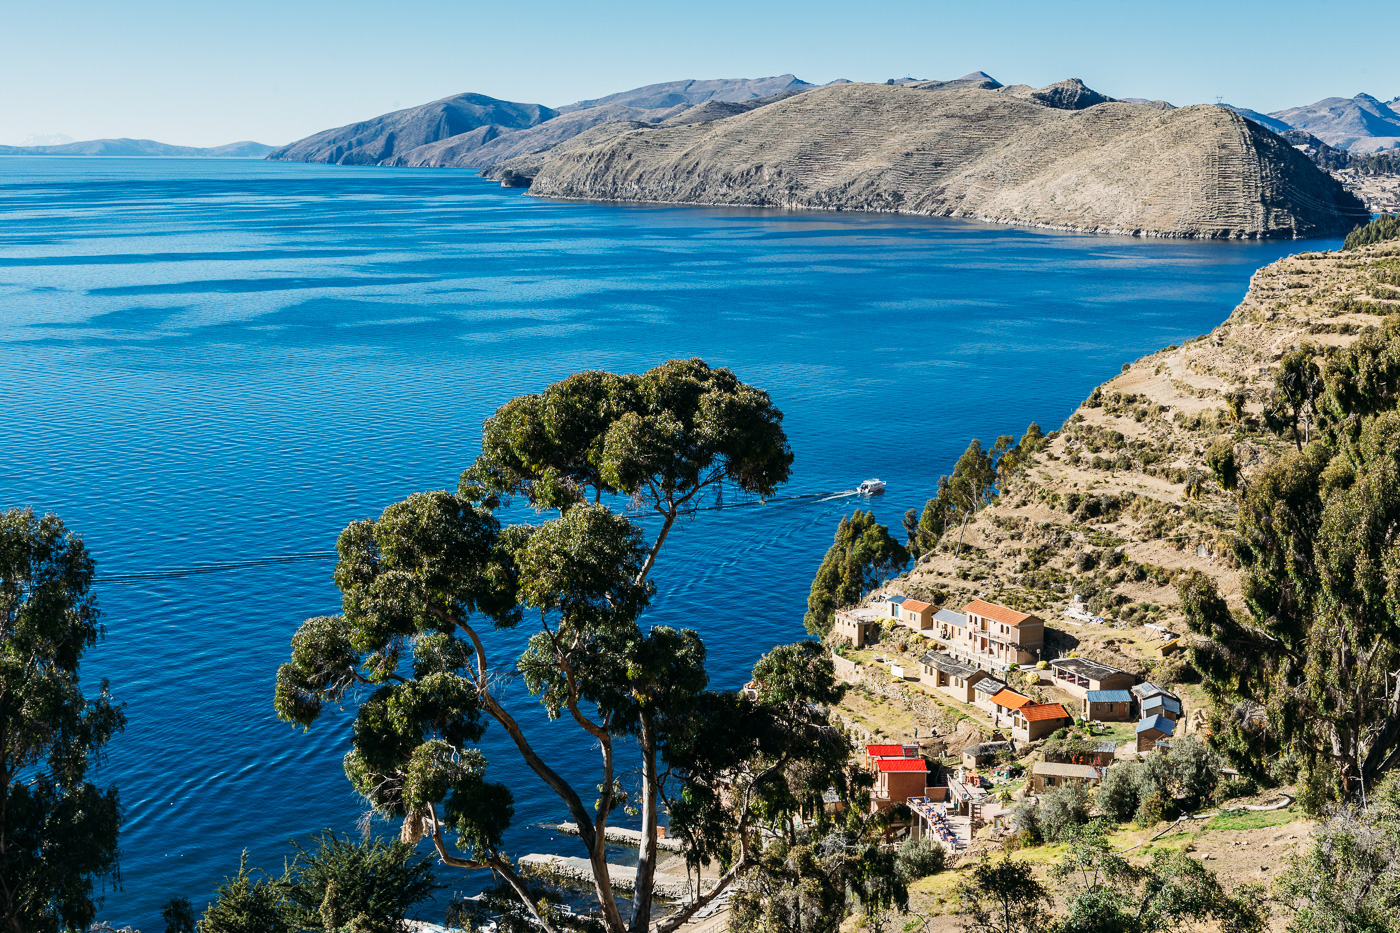 Isla Del Sol - Lake Titicaca, Bolivia - July 2015